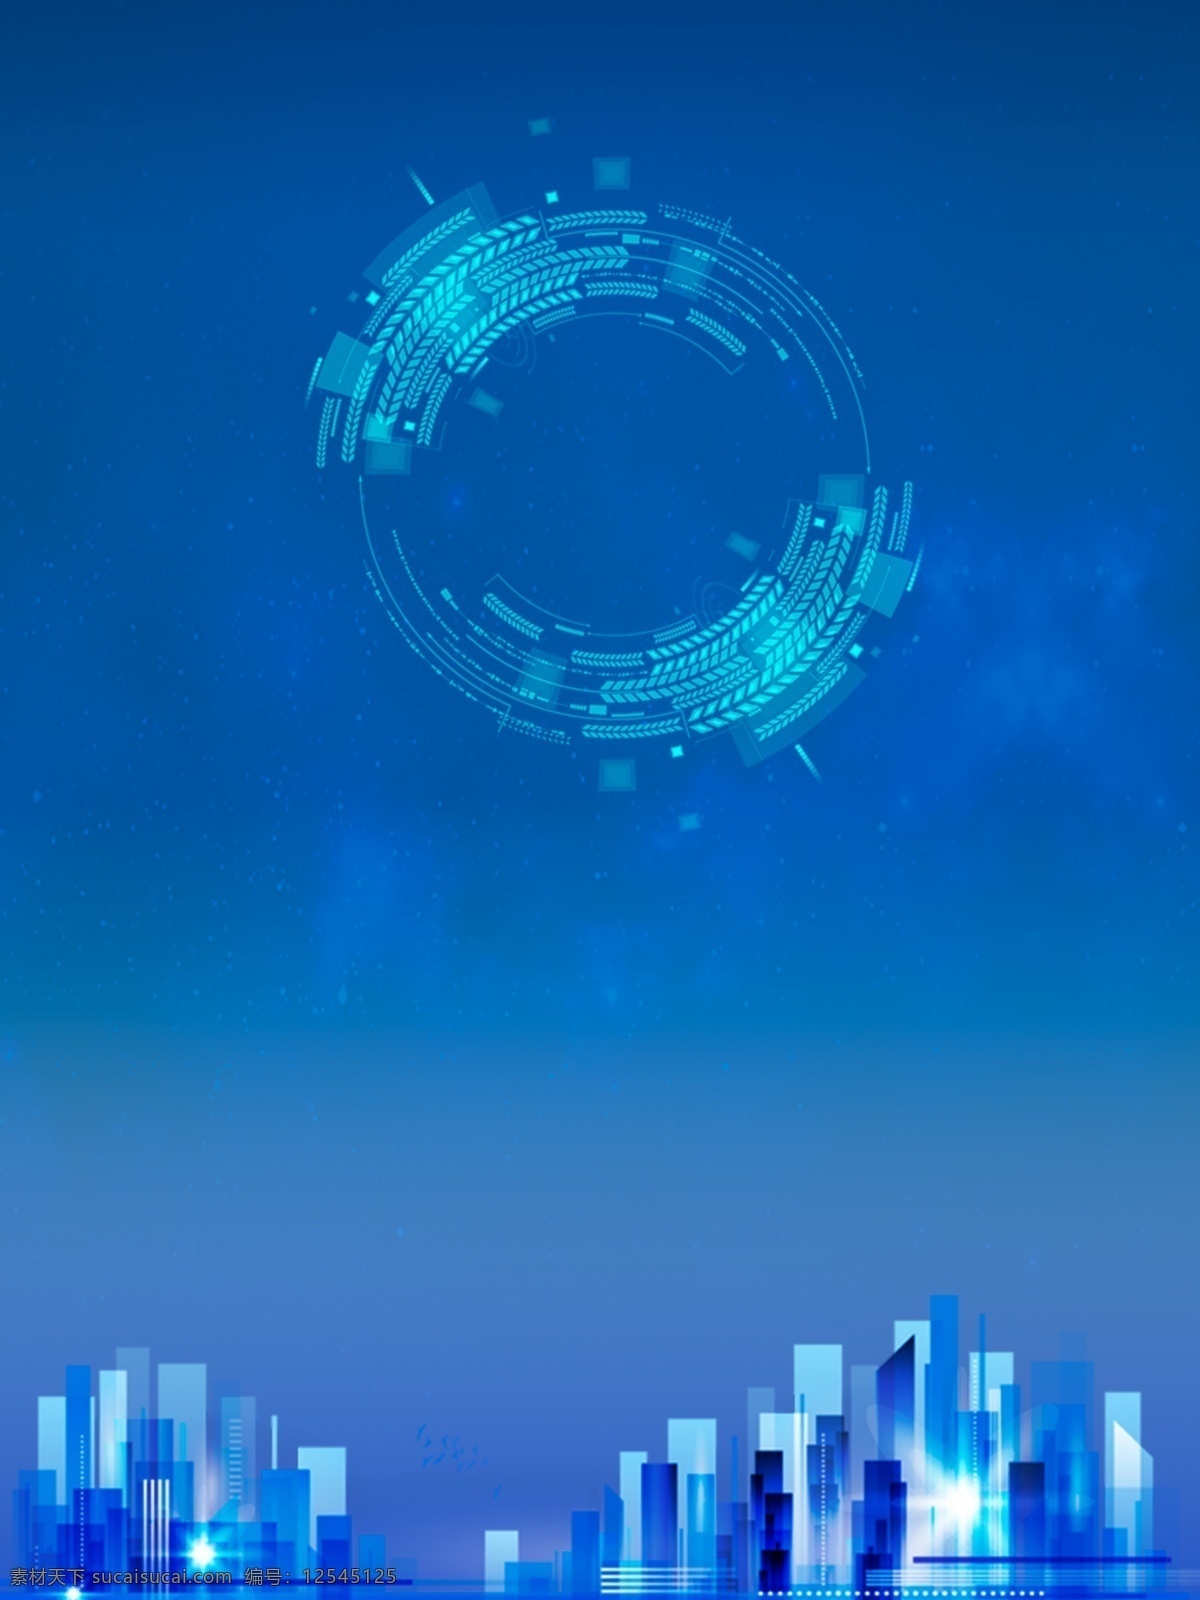 科技 城市 蓝色 夜晚 背景 图 科技城市 城市背景 科技背景 蓝色背景